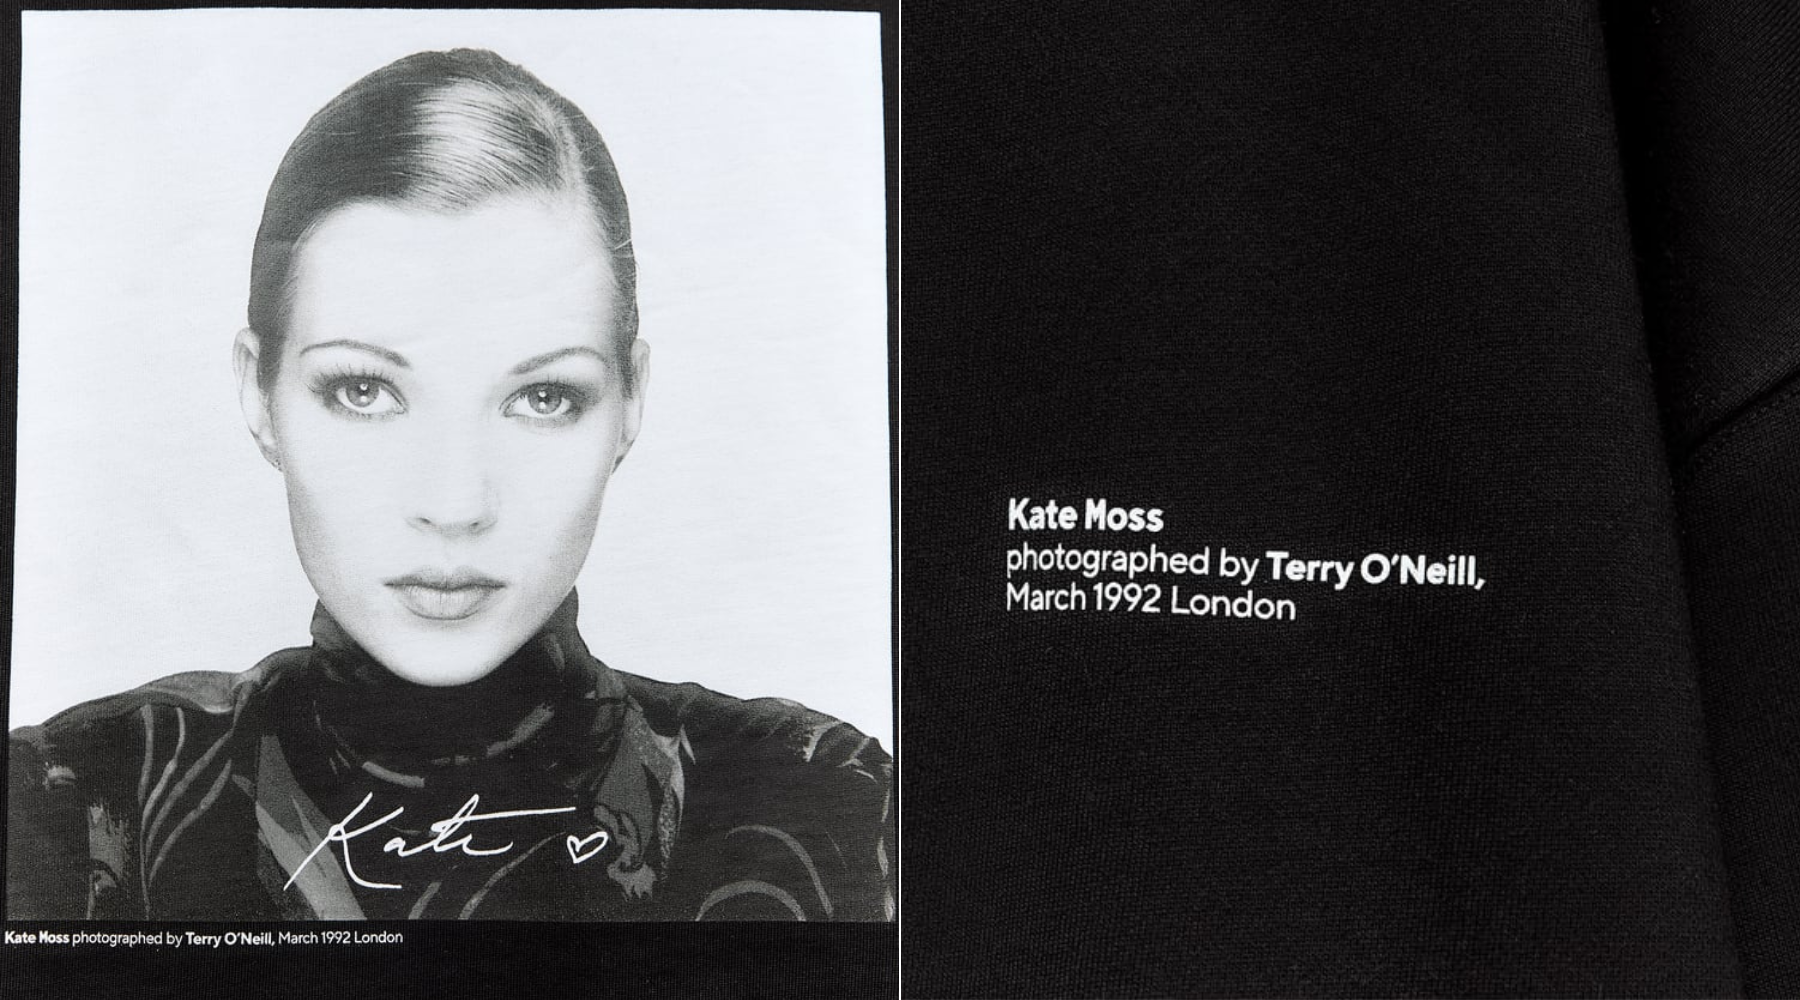 Don’t walk, RUN: Zara ima kolekciju sa čuvenim fotografijama Kate Moss iza kojih stoji Terry O’Neill